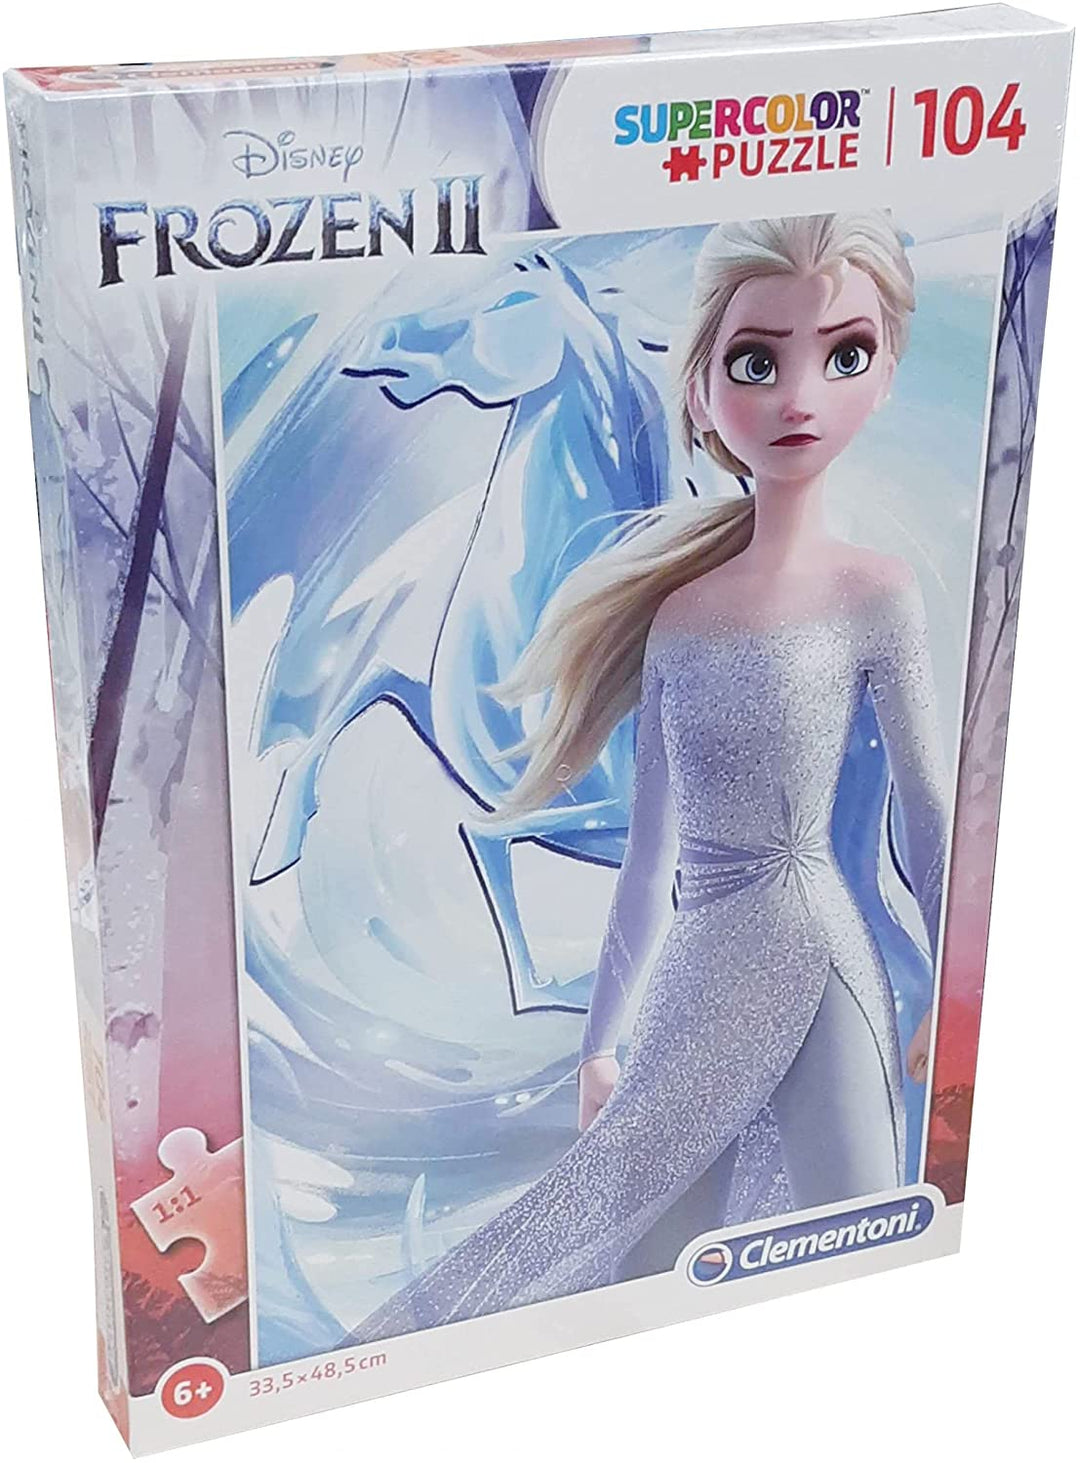 Clementoni – 27127 – Supercolor Puzzle – Disney Frozen 2 – 104 Teile – Hergestellt in Italien – Puzzle für Kinder ab 6 Jahren